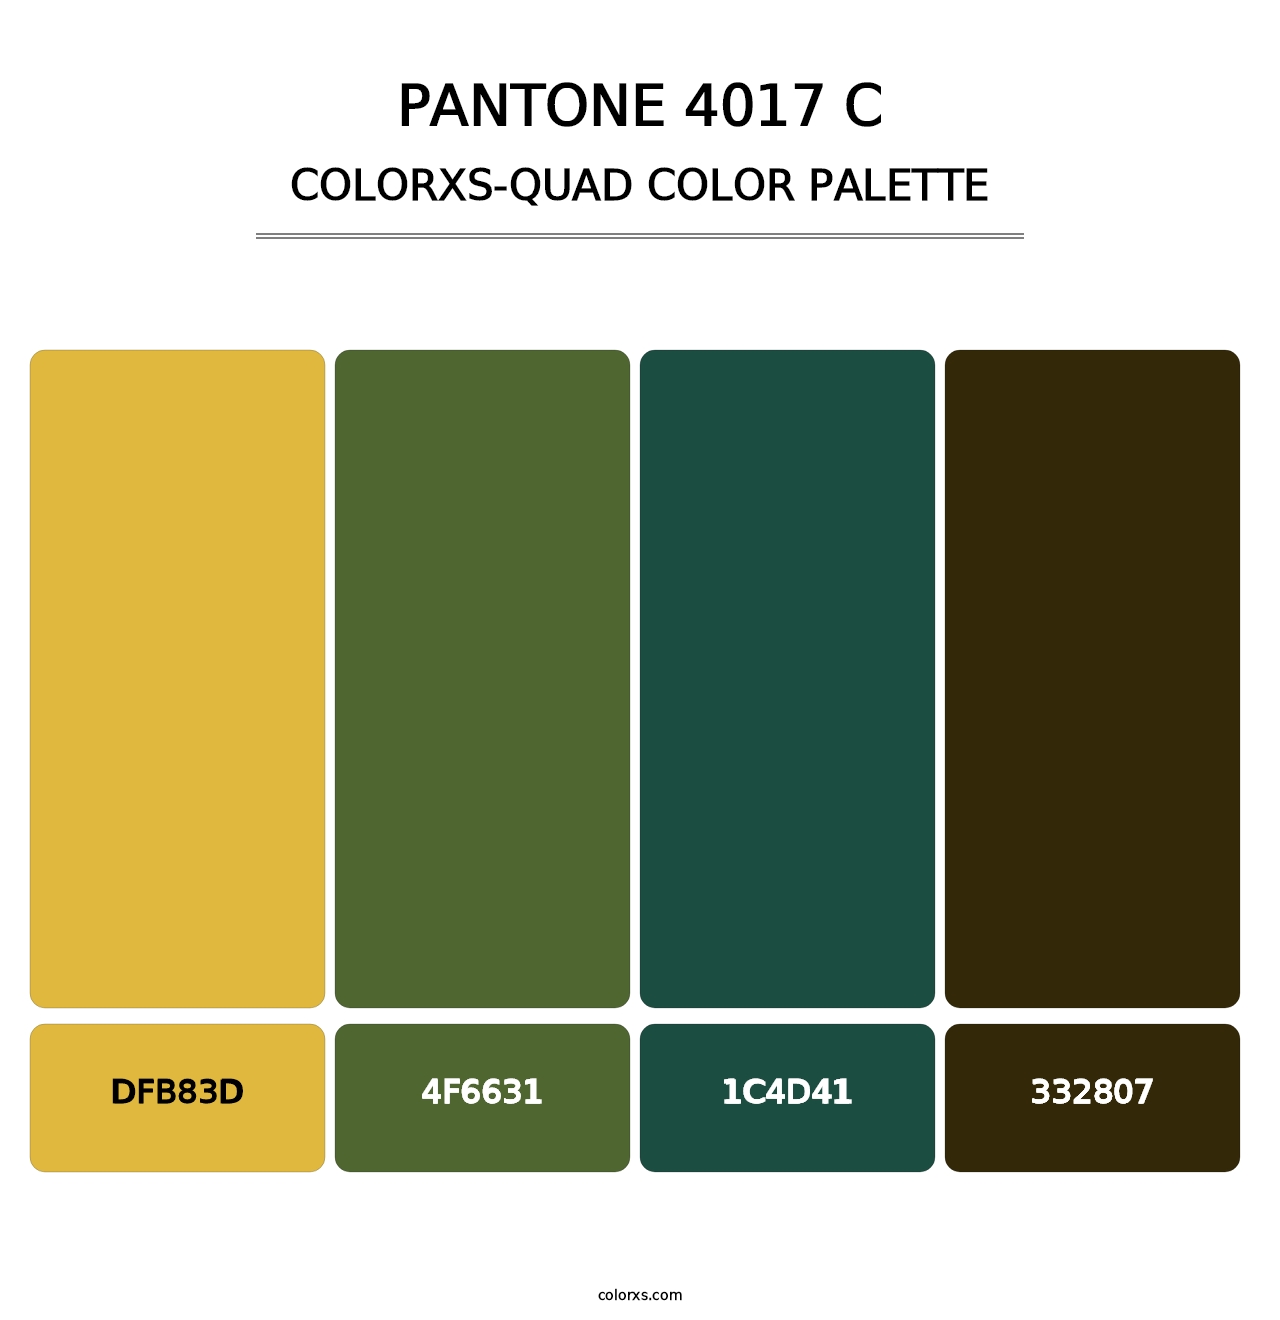 PANTONE 4017 C - Colorxs Quad Palette